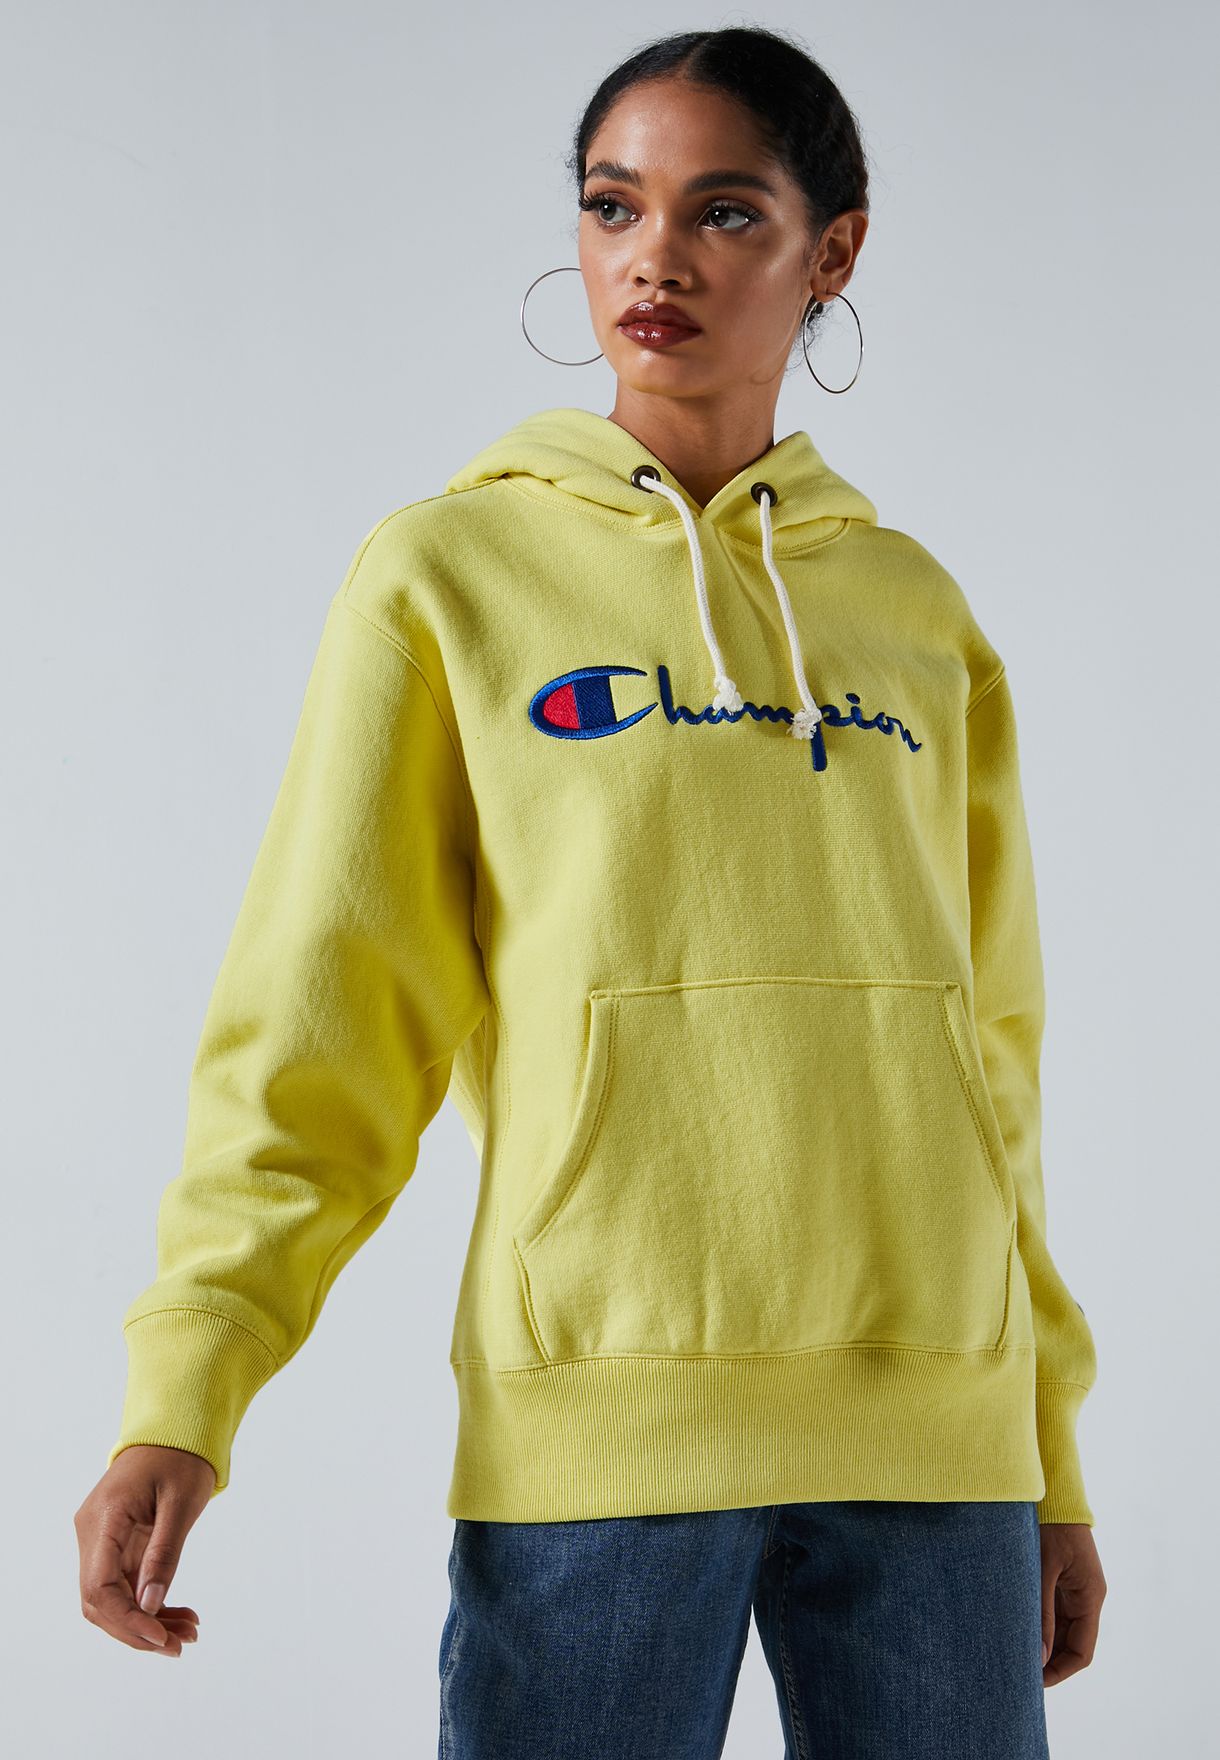 yellow champion hoodie women's